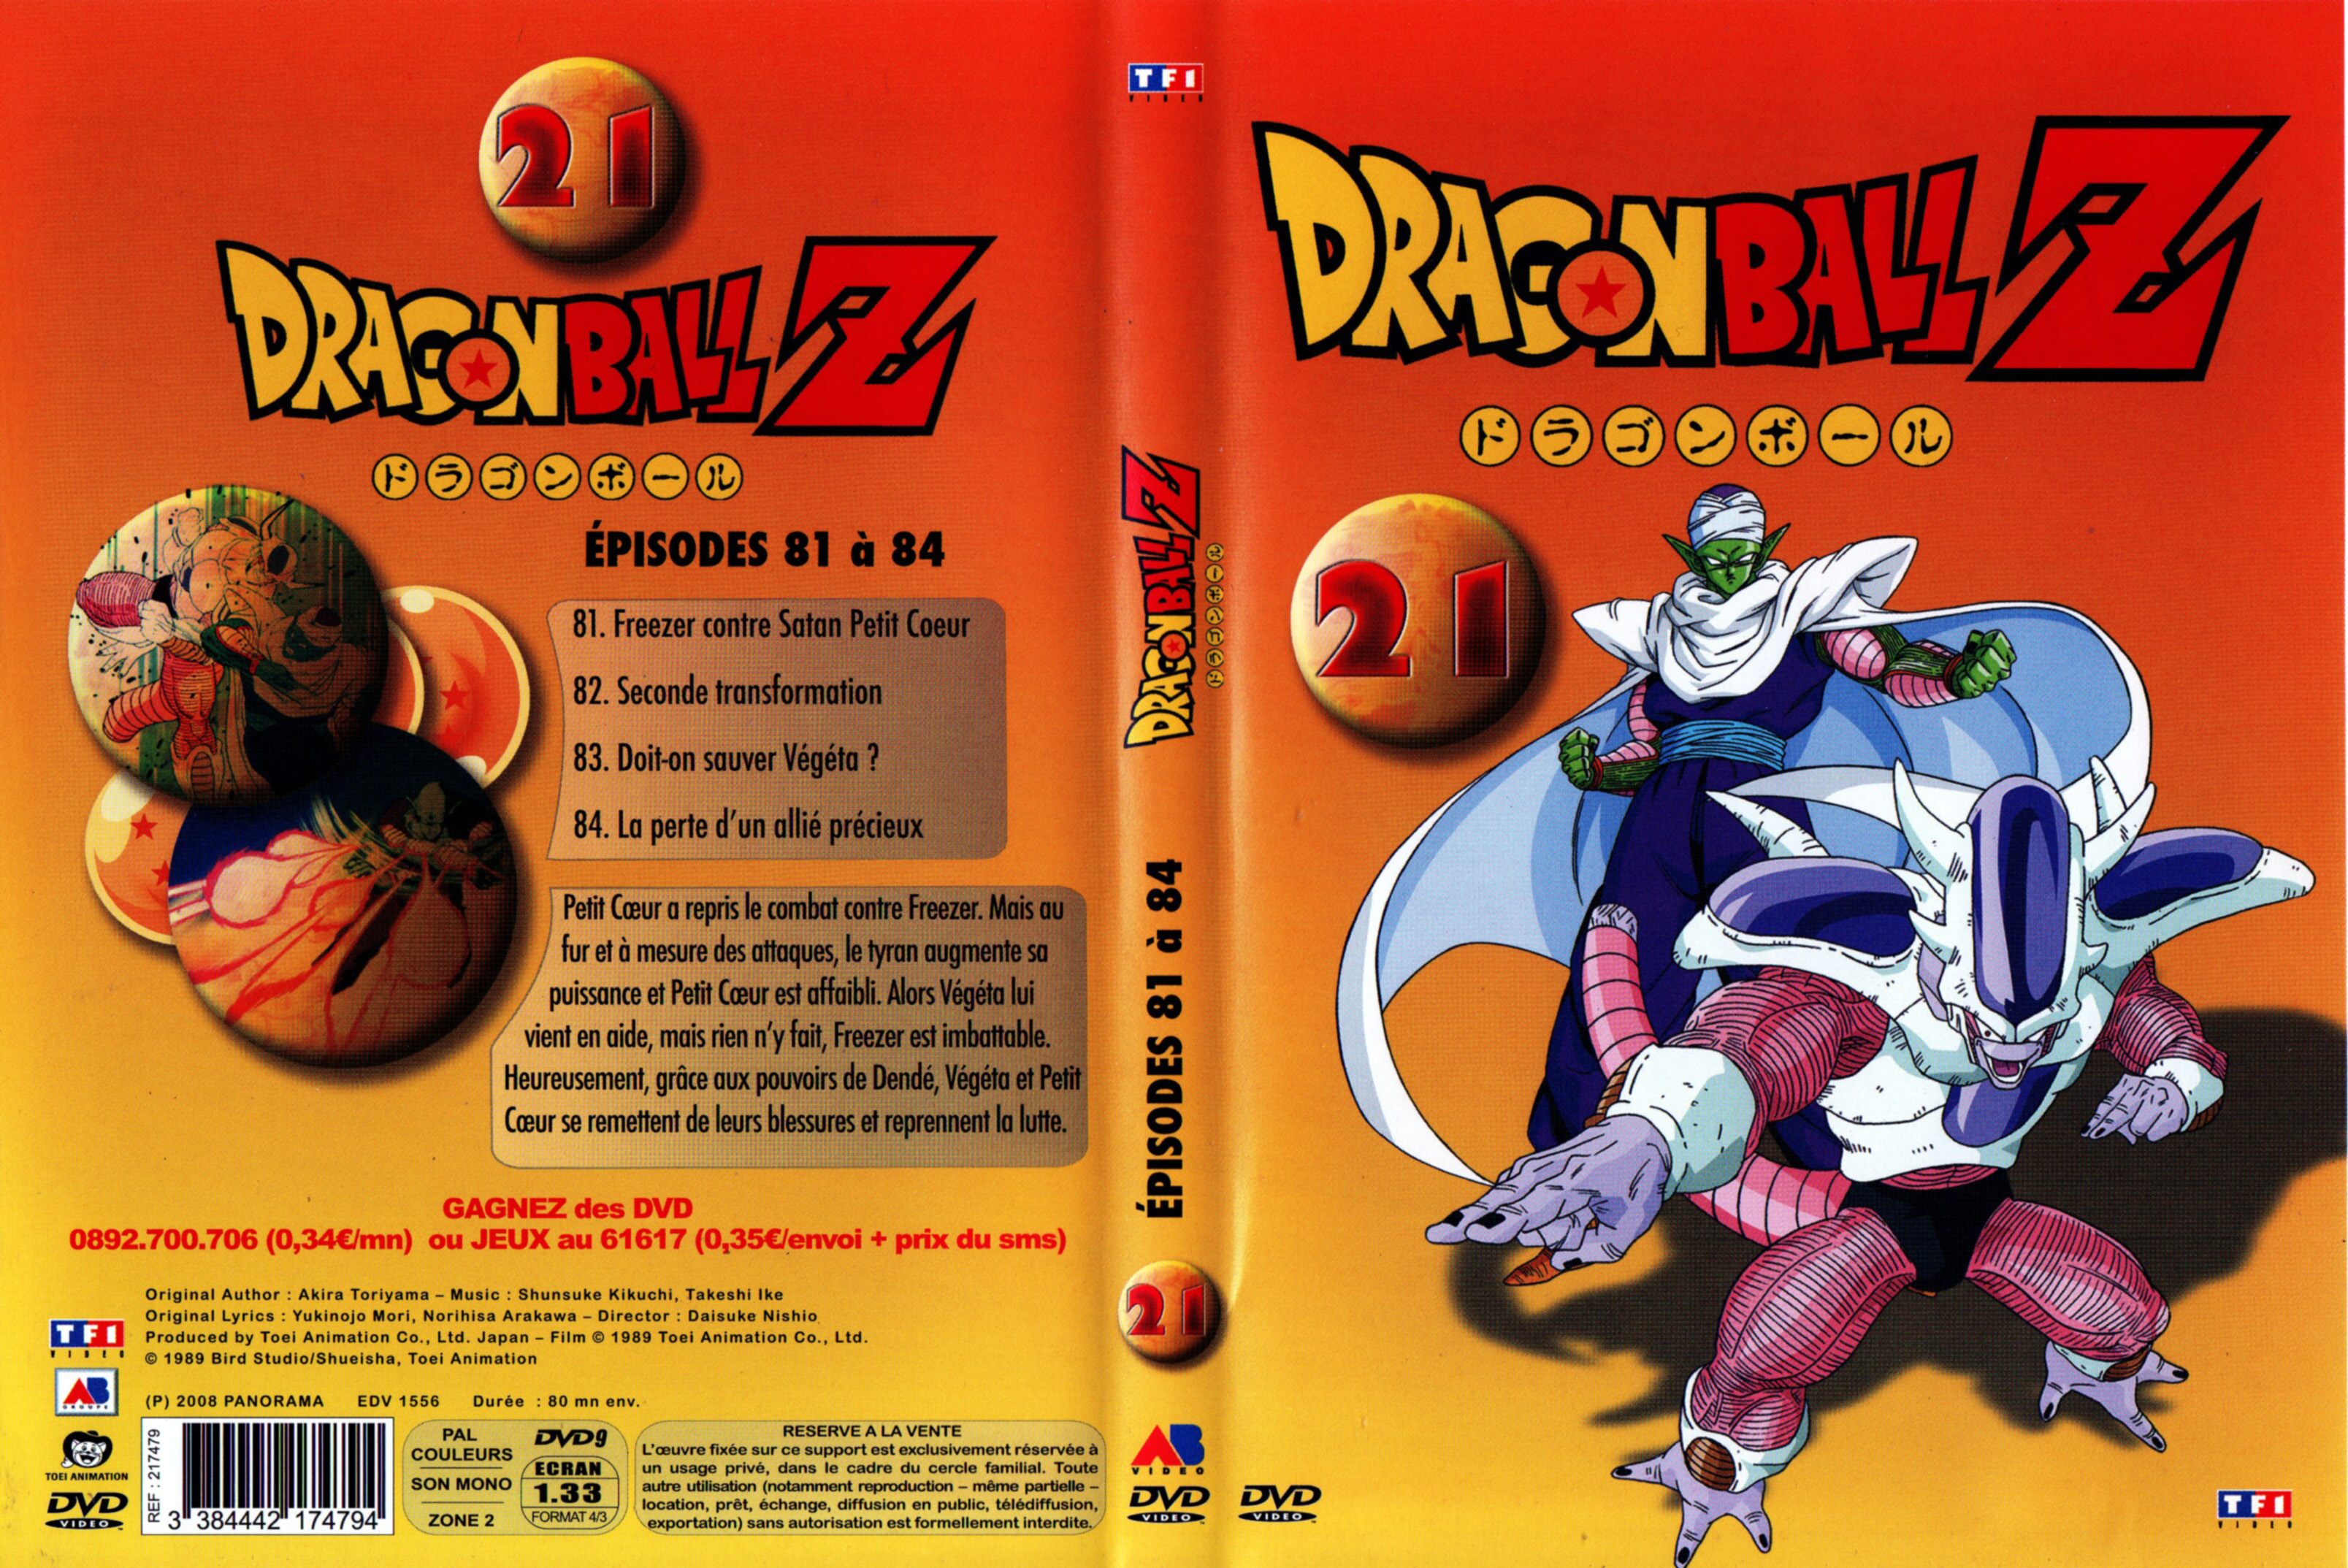 Jaquette DVD Dragon ball Z vol 21 v2